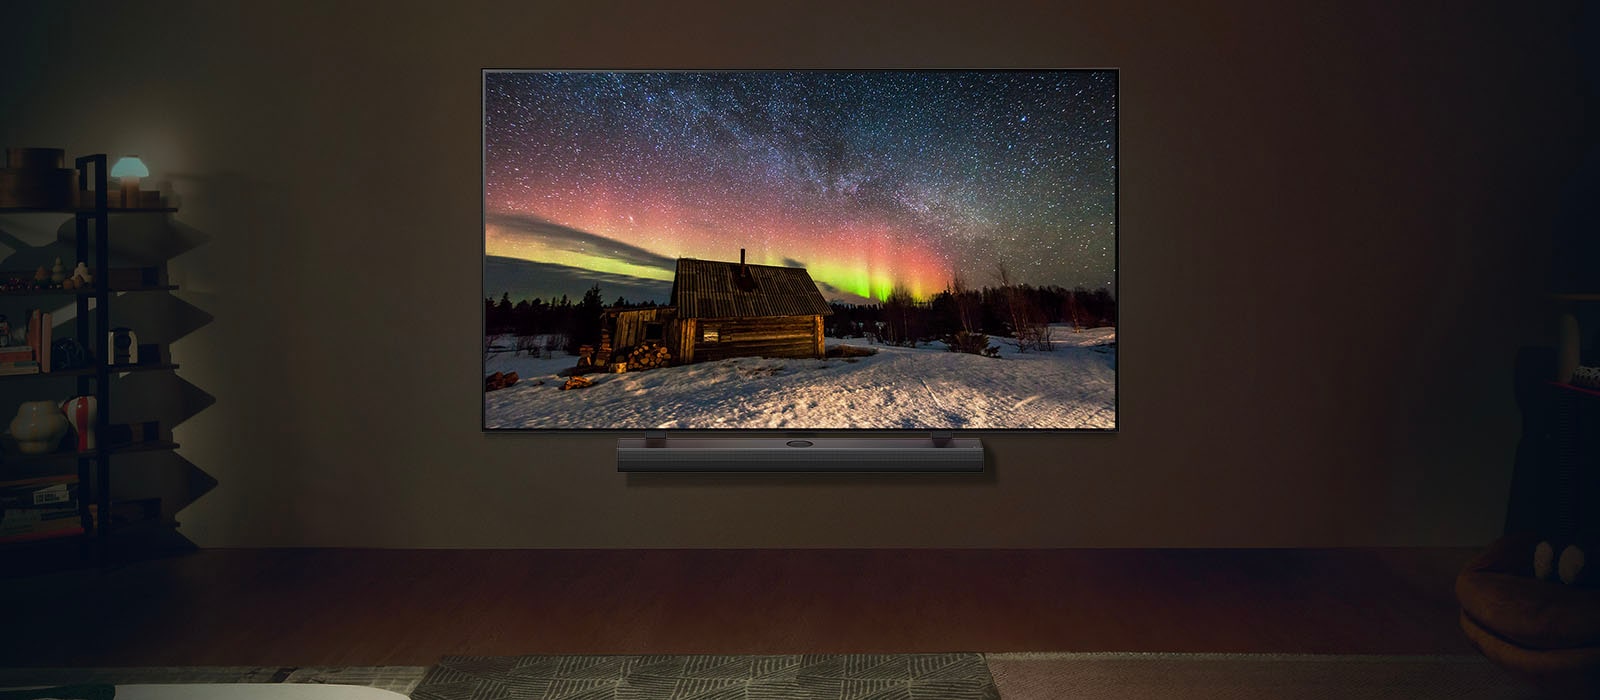 TV LG và Loa thanh LG trong không gian sống hiện đại vào ban đêm. Hình ảnh màn hình cực quang được hiển thị với mức độ sáng lý tưởng.